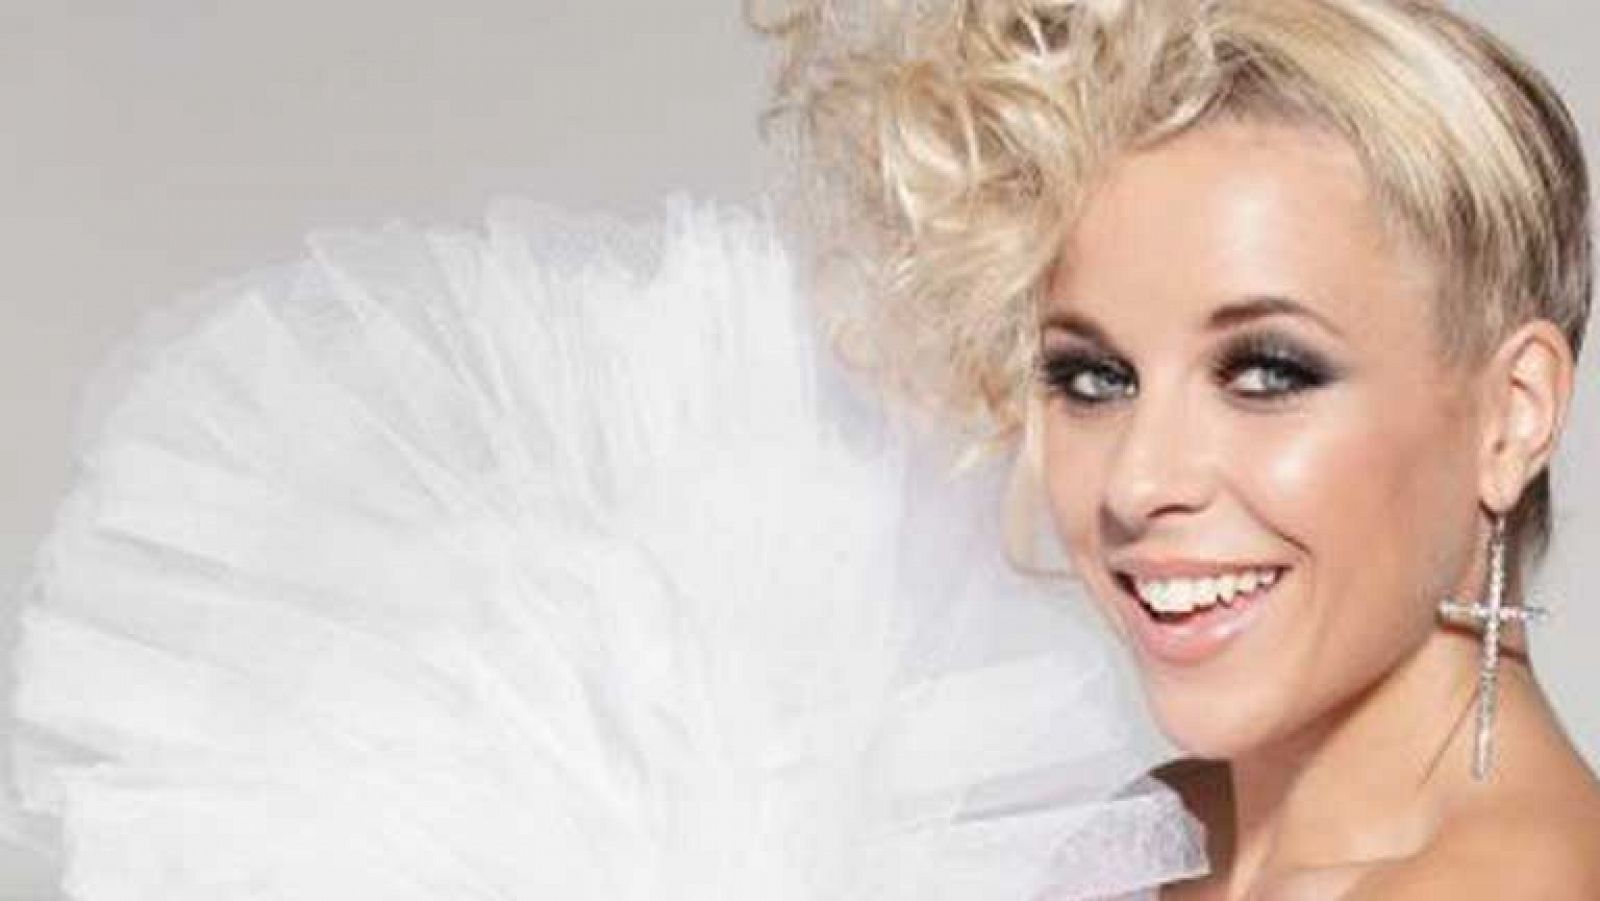 Eurovisión 2013 - Krista Siegfrids representa a Finlandia en Eurovisión 2013 con la canción "Marry Me"